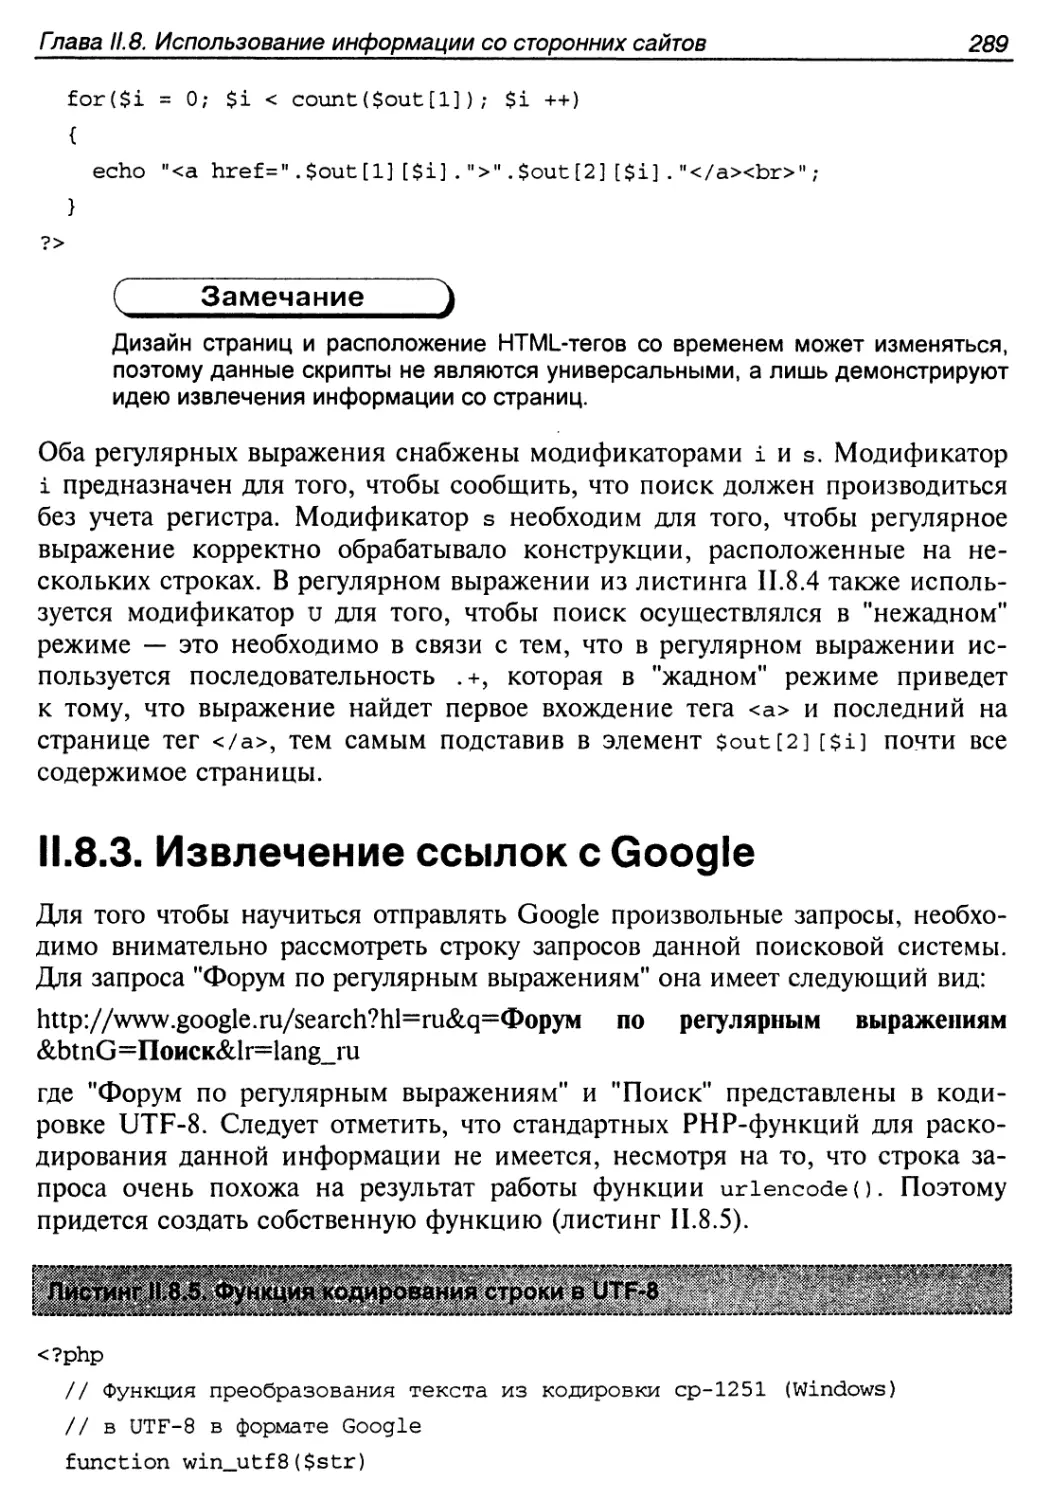 II.8.3. Извлечение ссылок с Google